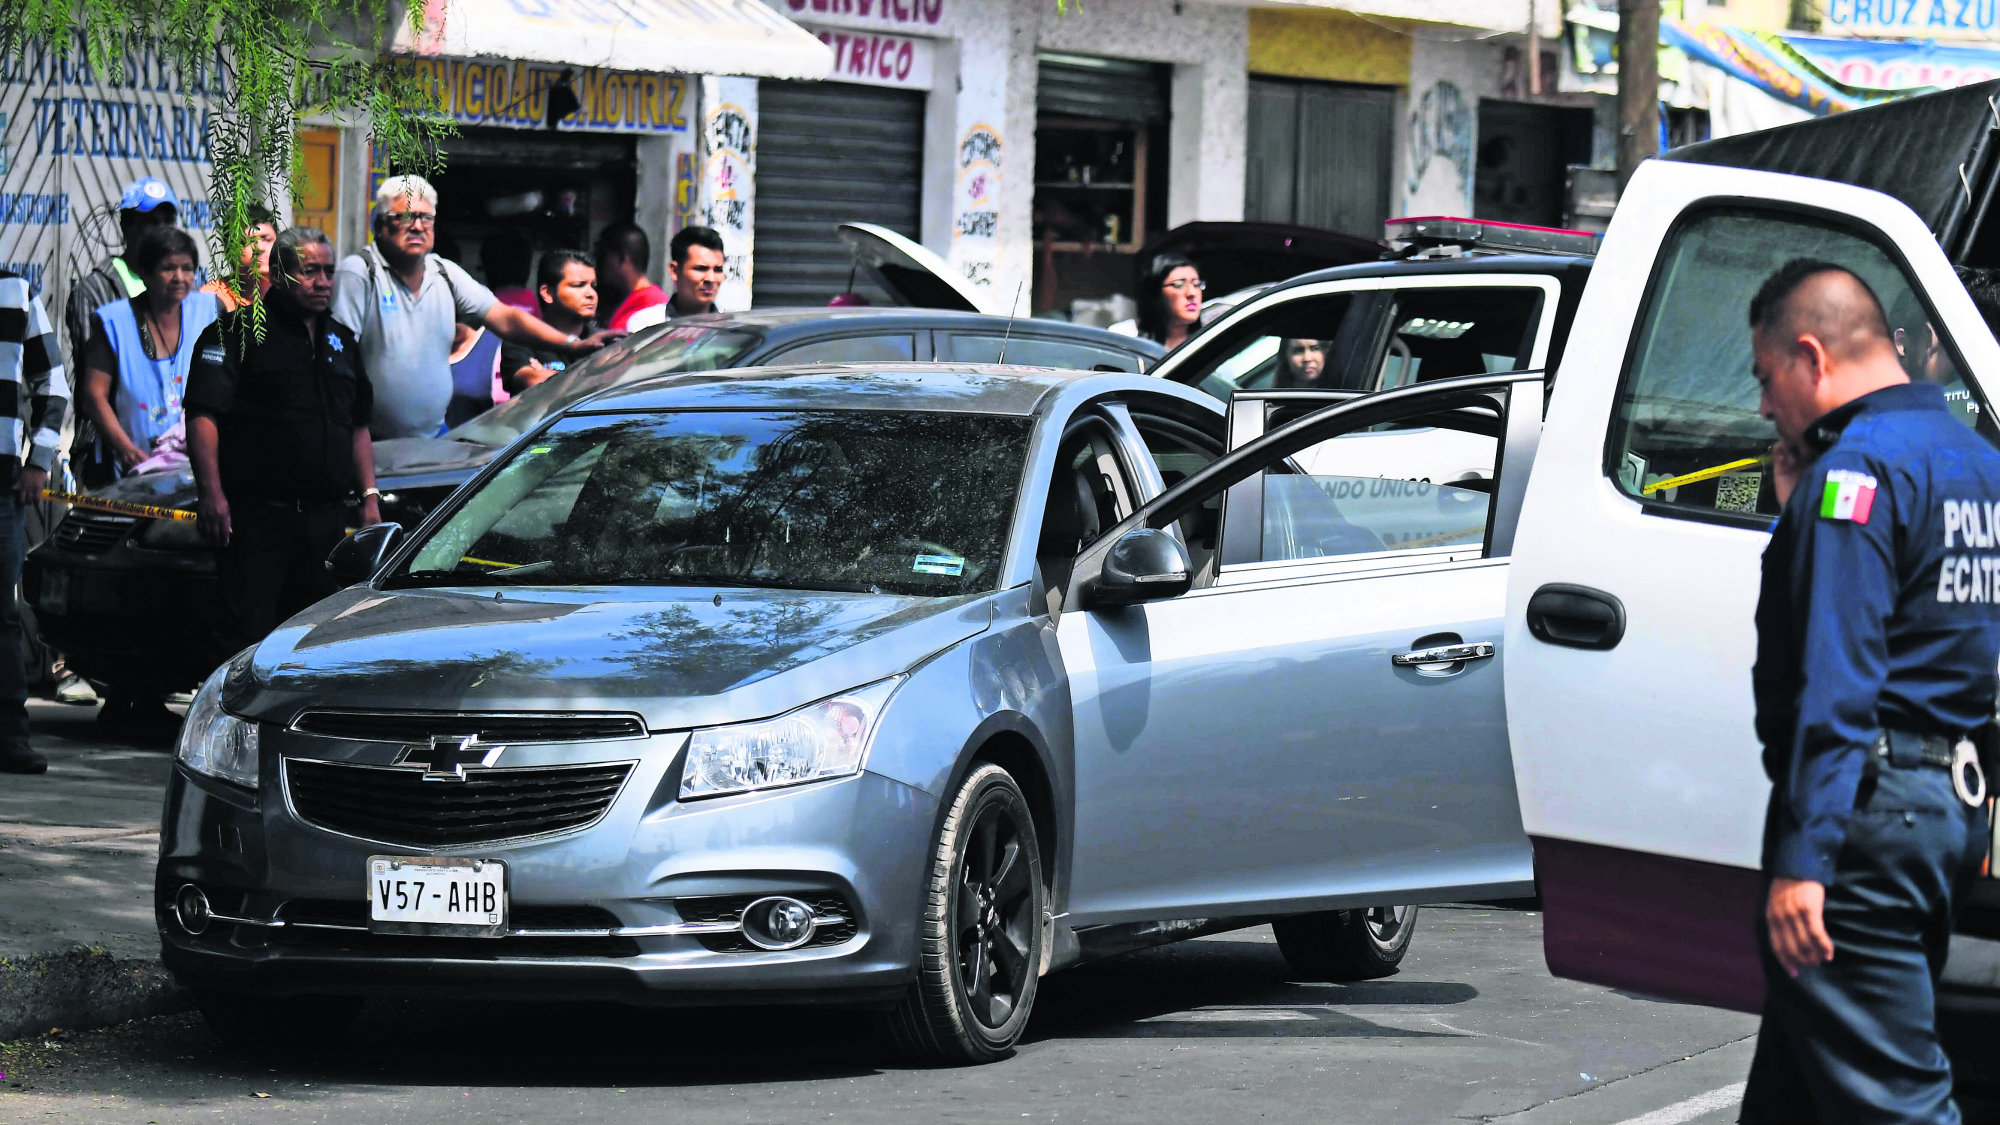 Hombres Reclaman Por Auto Robado Y Les Responden A Balazos En Deshuesadero De Ecatepec El